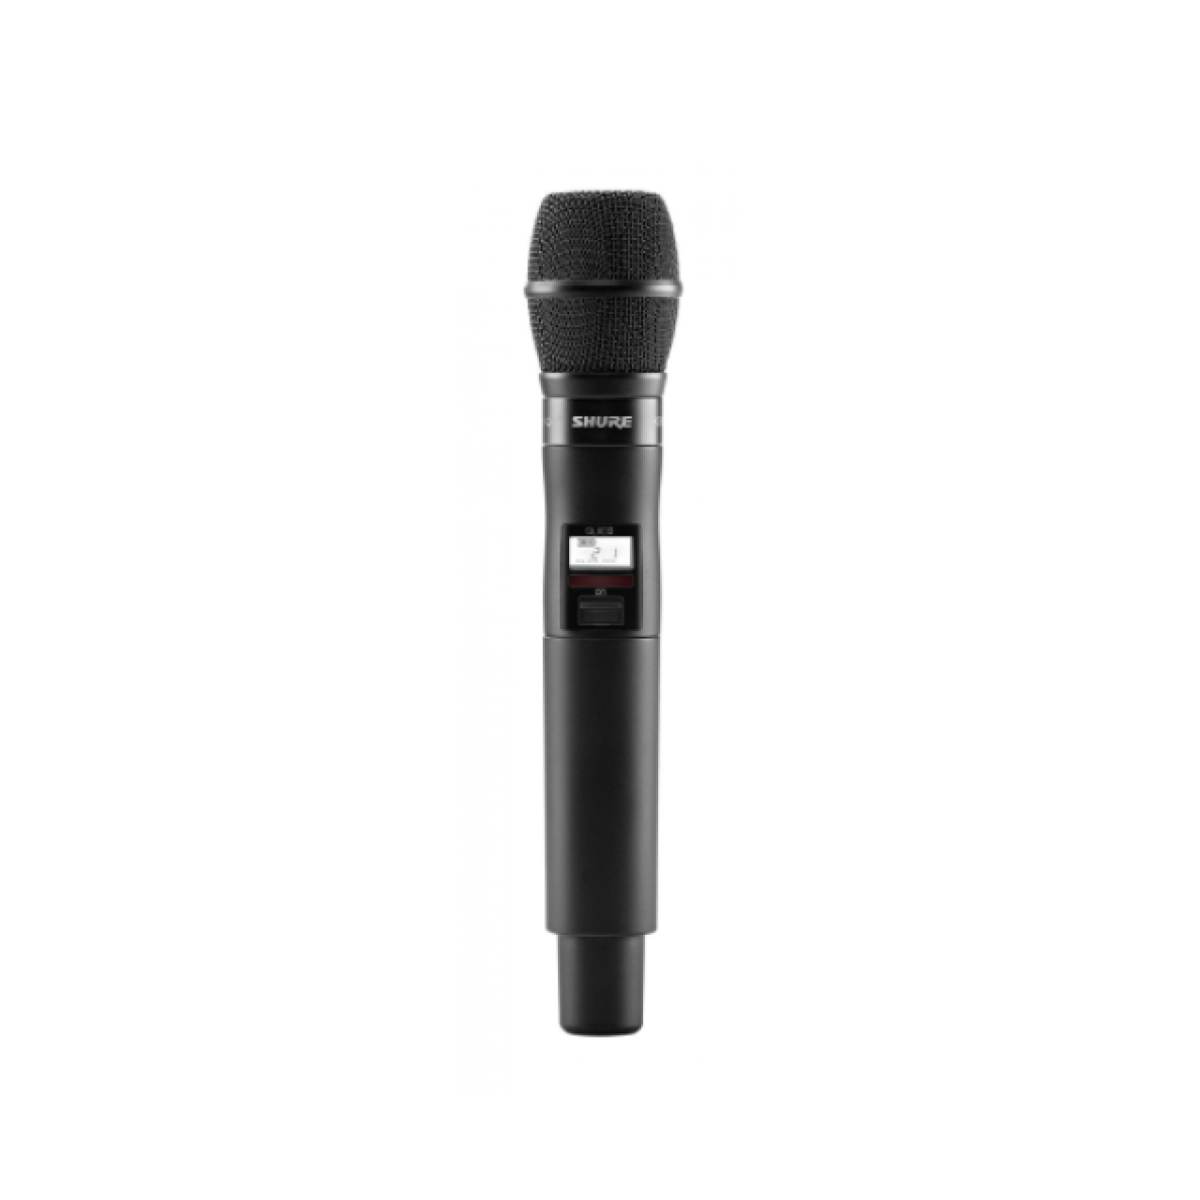 QLXD2/K9HS=-V50 Handheld Transmitter with KSM9HS Microphone